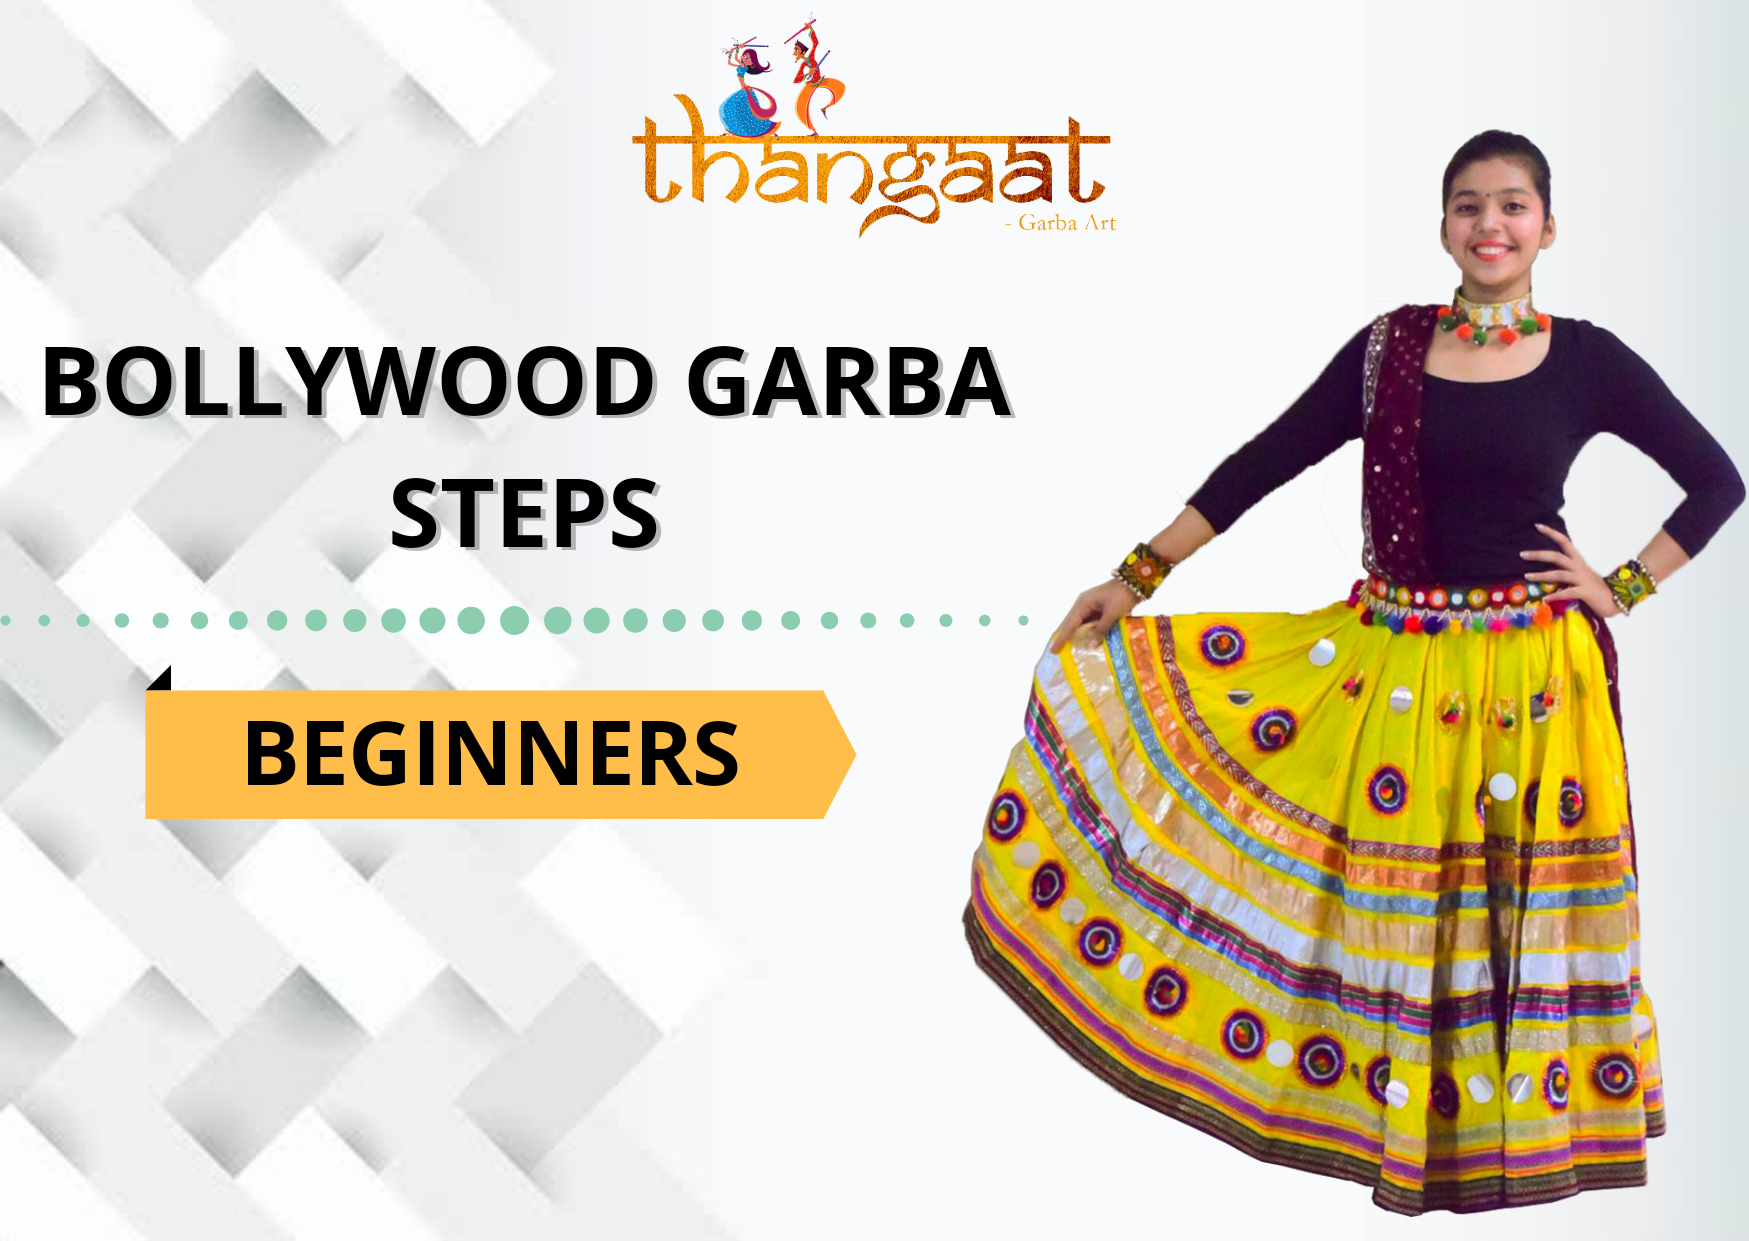 Bollywood Garba Steps